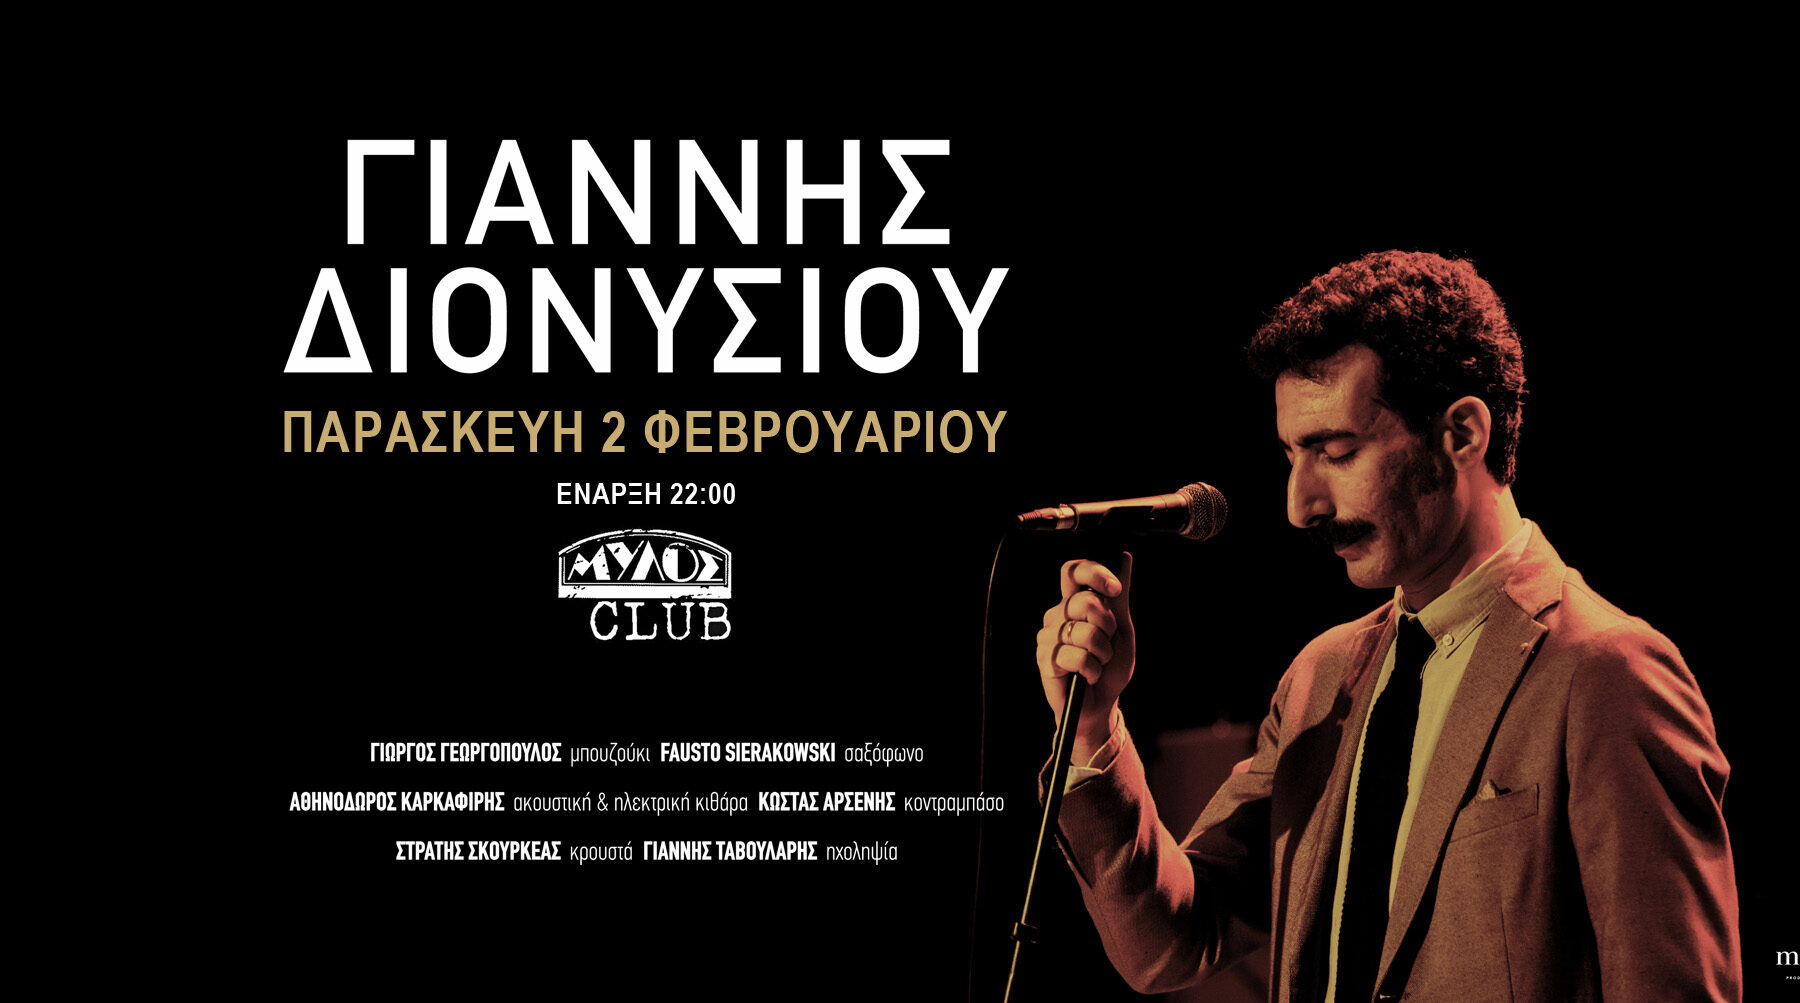 Θεσσαλονίκη: Ο Γιάννης Διονυσίου στο Mylos Club